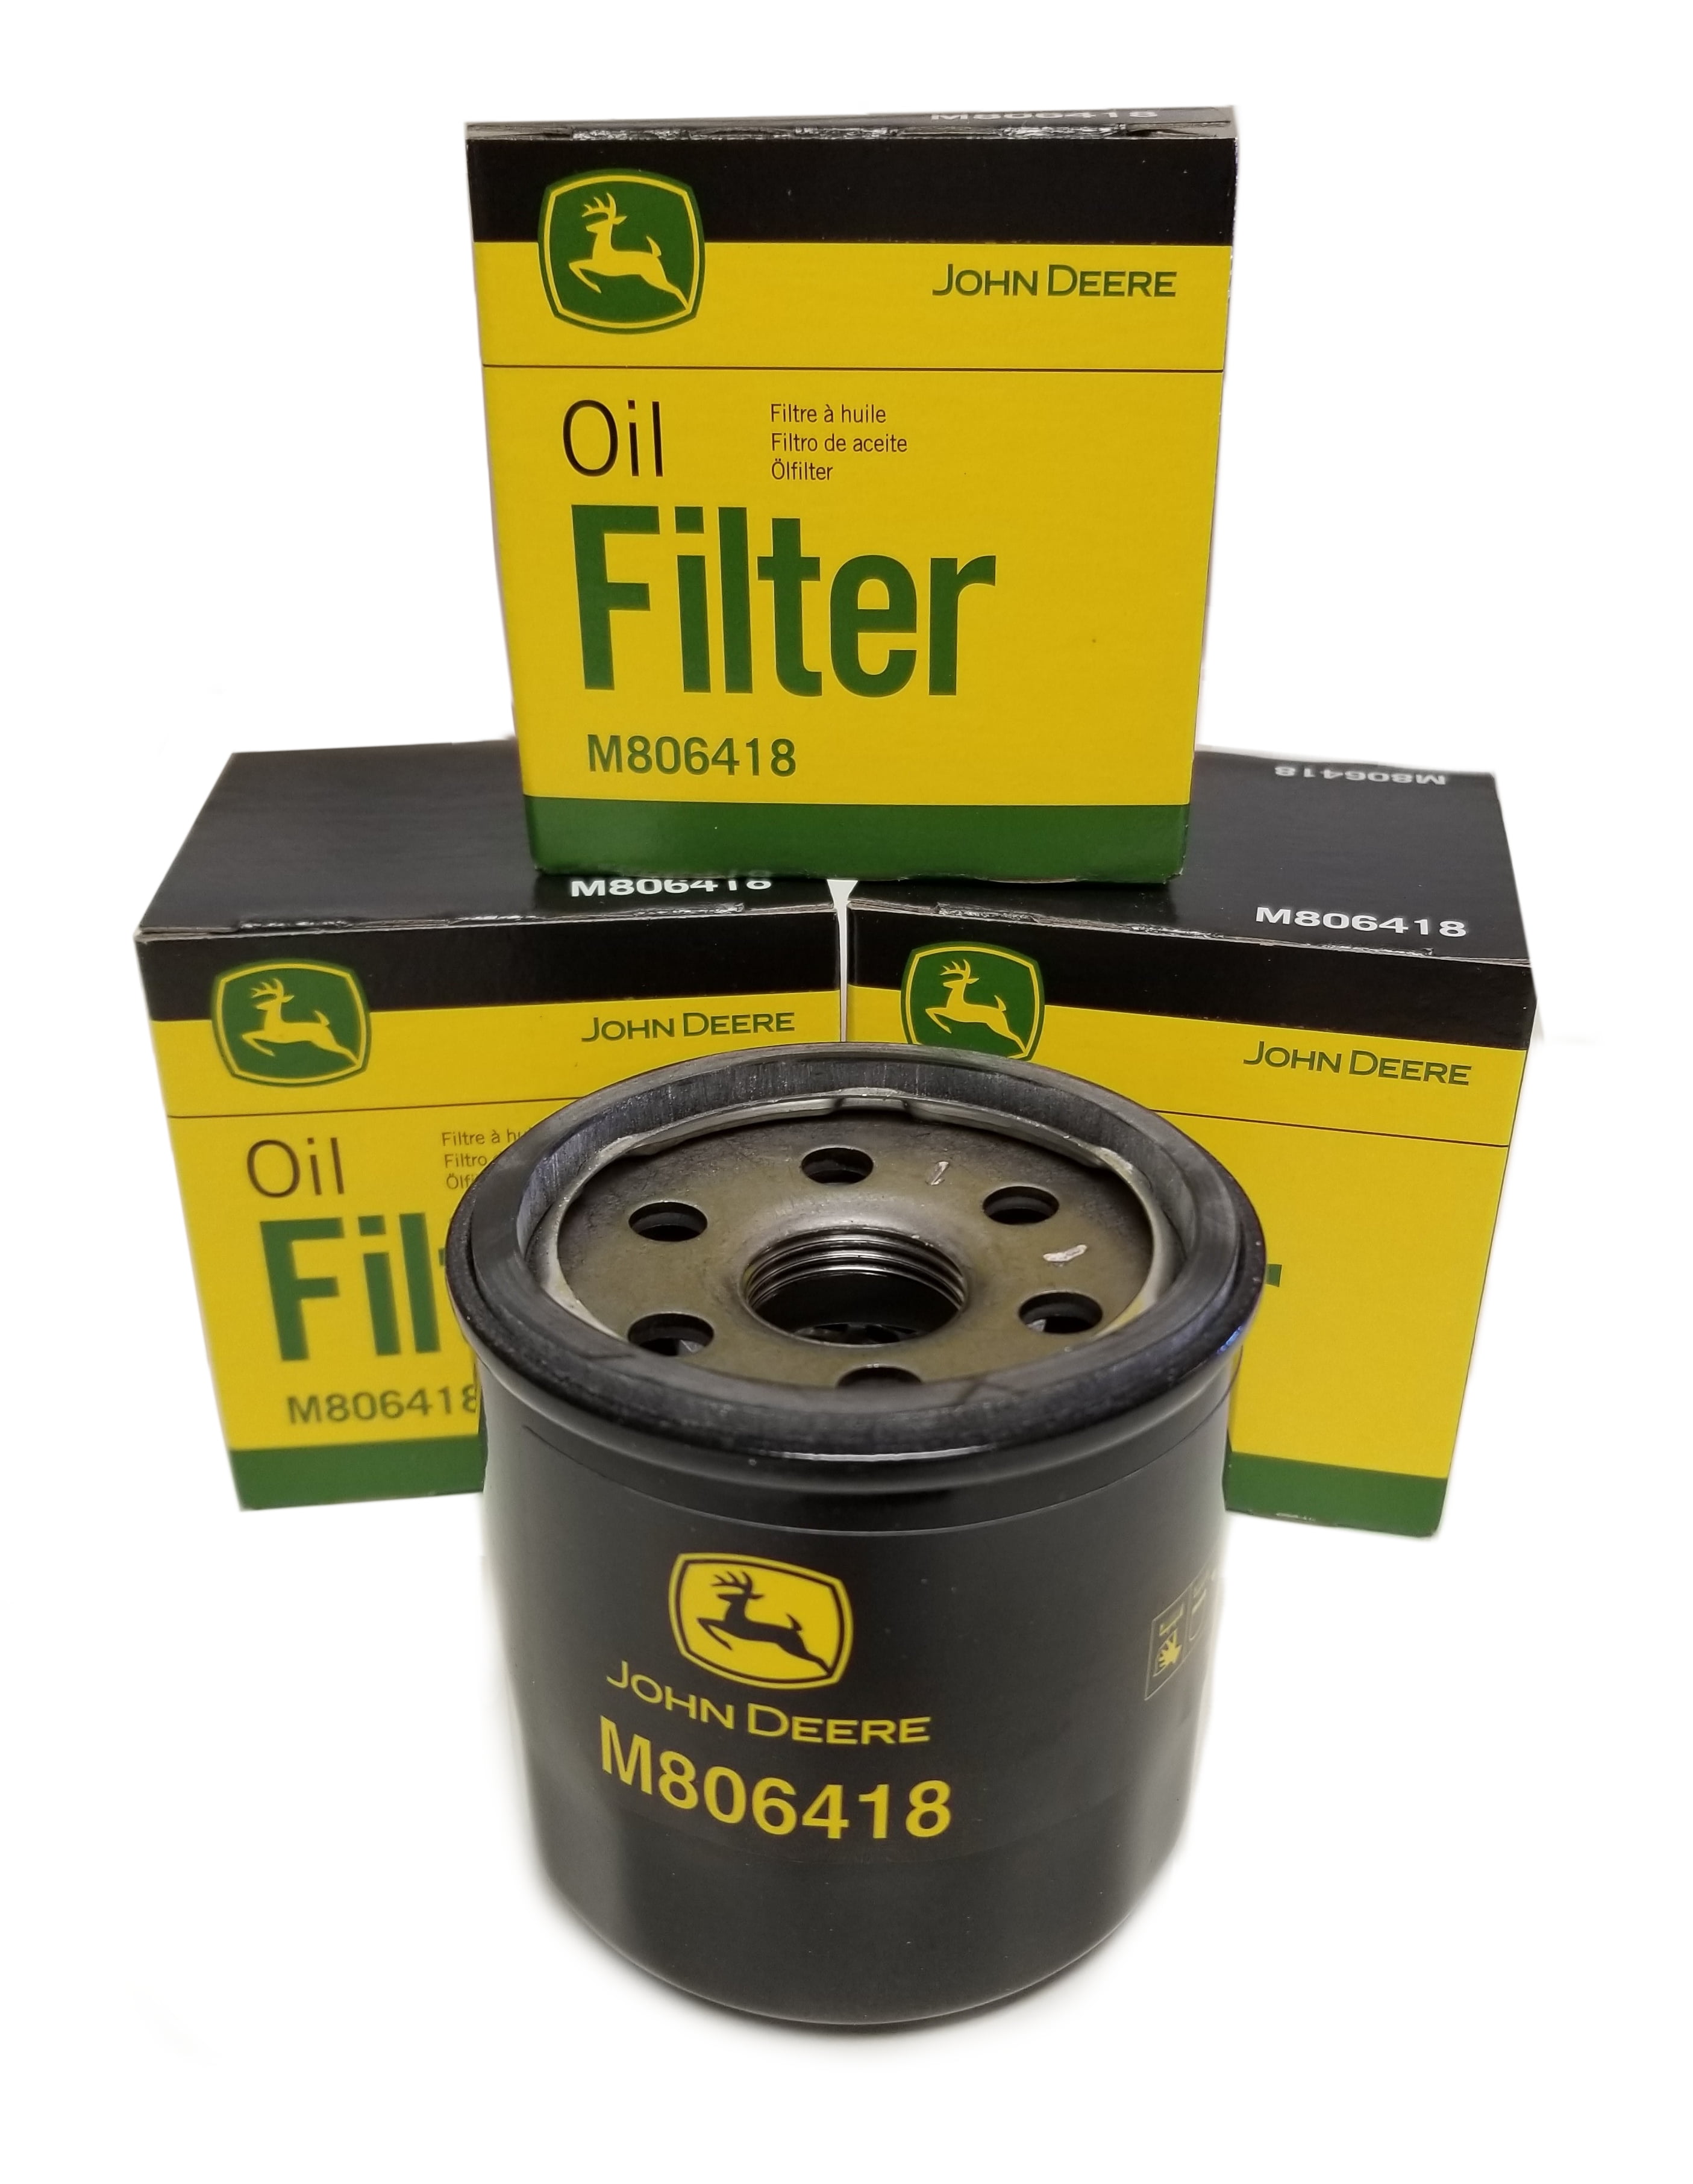 1 M806419 + ... John Deere Original Equipment Oil Change Kit Filter and Oil - 